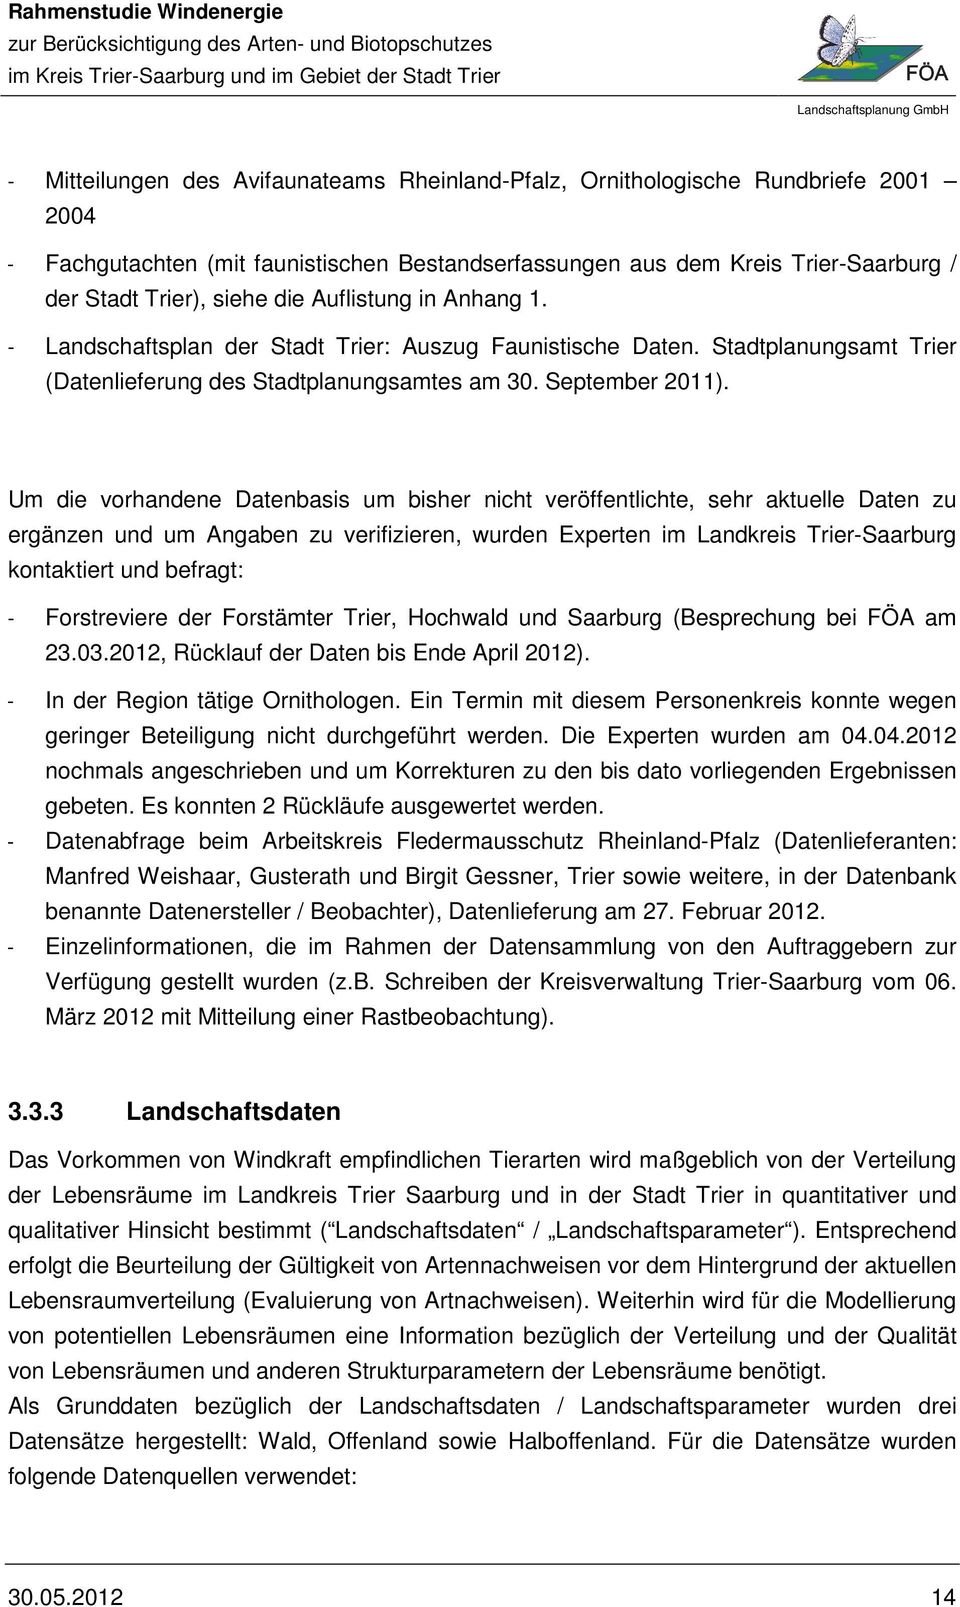 Um die vorhandene Datenbasis um bisher nicht veröffentlichte, sehr aktuelle Daten zu ergänzen und um Angaben zu verifizieren, wurden Experten im Landkreis Trier-Saarburg kontaktiert und befragt: -